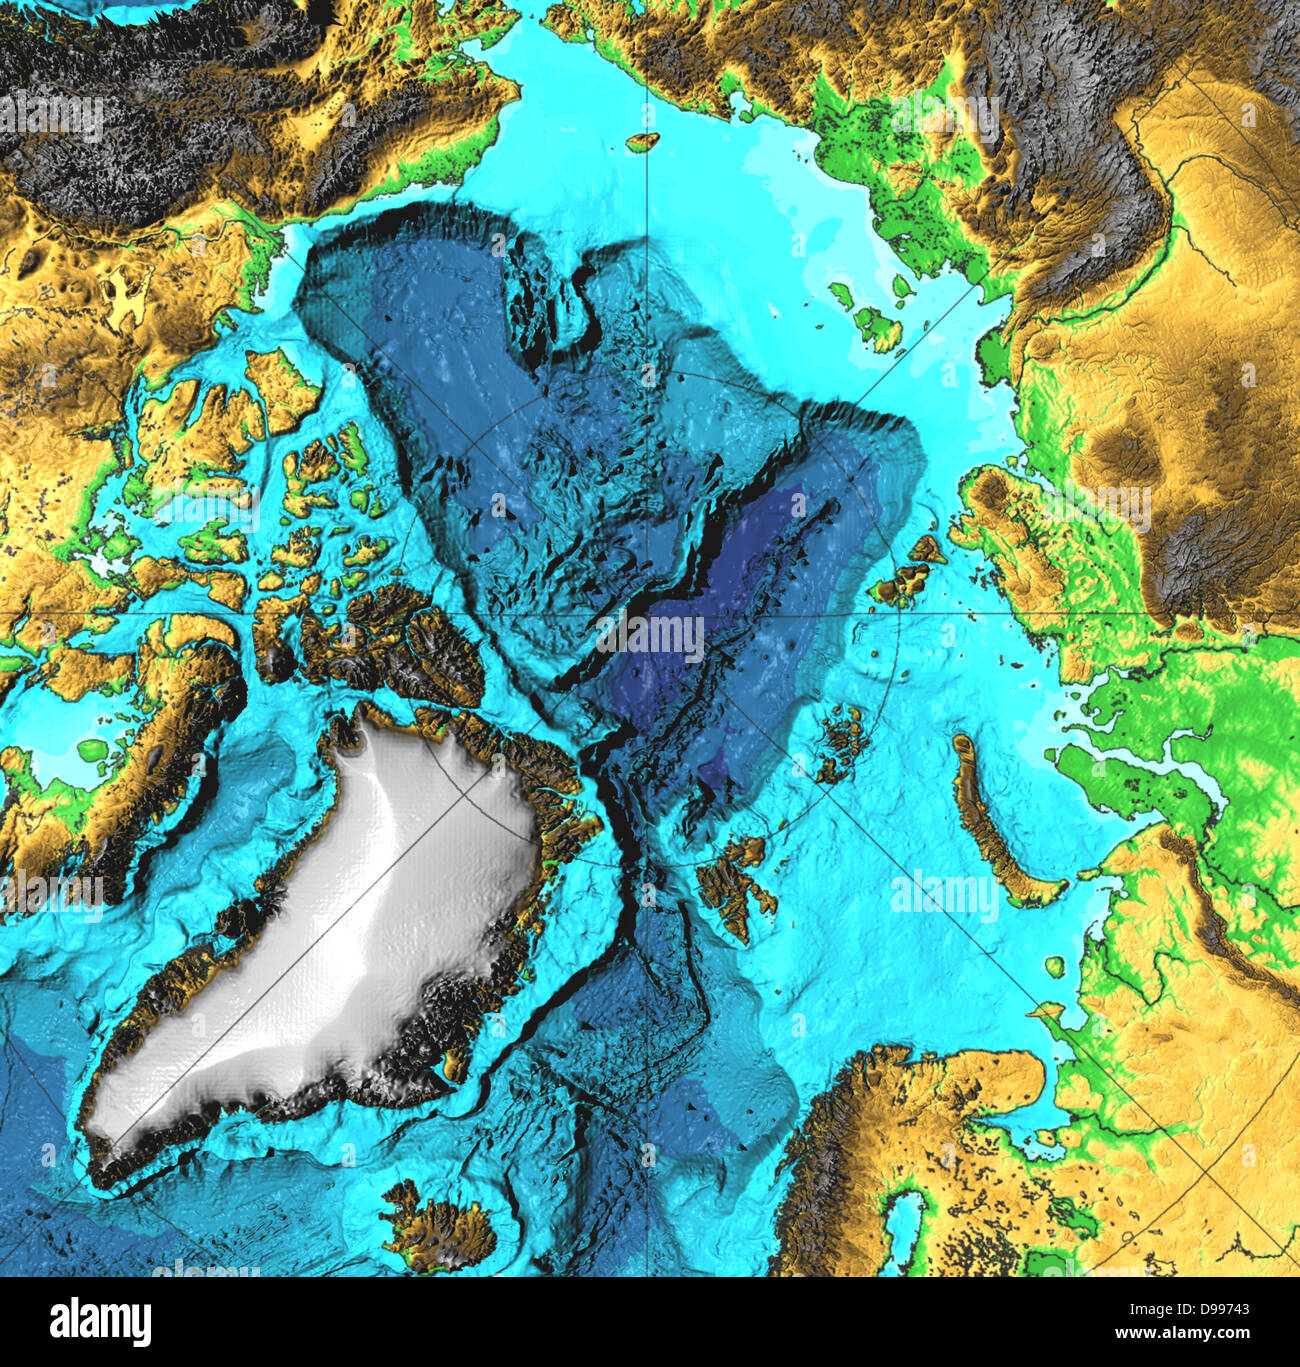 15 janvier 2003 les sources hydrothermales dans l'océan Arctique. "Sur l'Gakkel Ridge, qui est dans l'océan Arctique entre le Groenland et la Sibérie, la preuve de 9 à 12 des évents hydrothermaux le long d'environ 680 kilomètres de la vallée du Rift, la NOAA" Banque D'Images